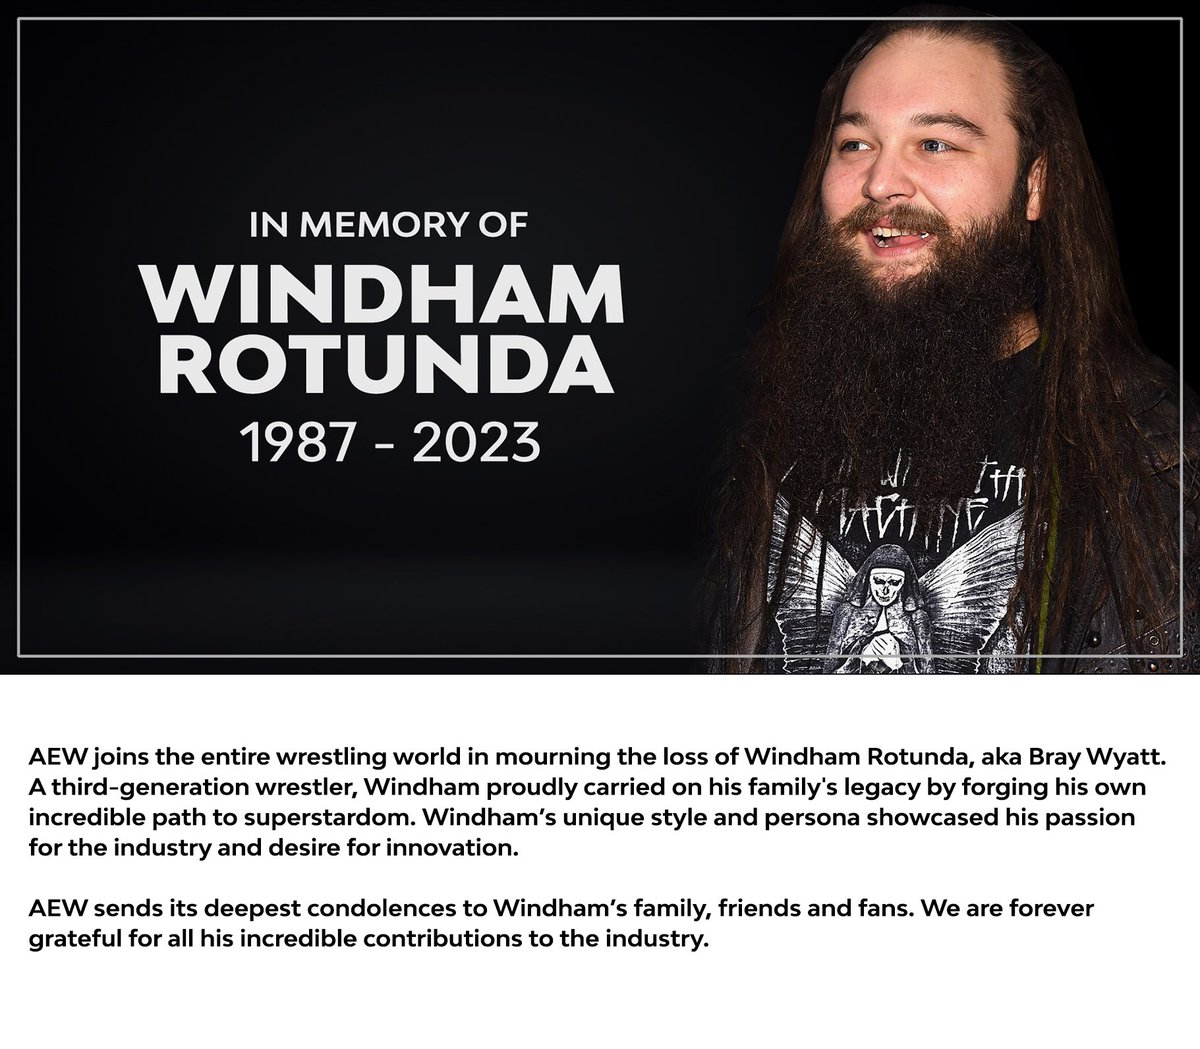 RIP Windham Rotunda